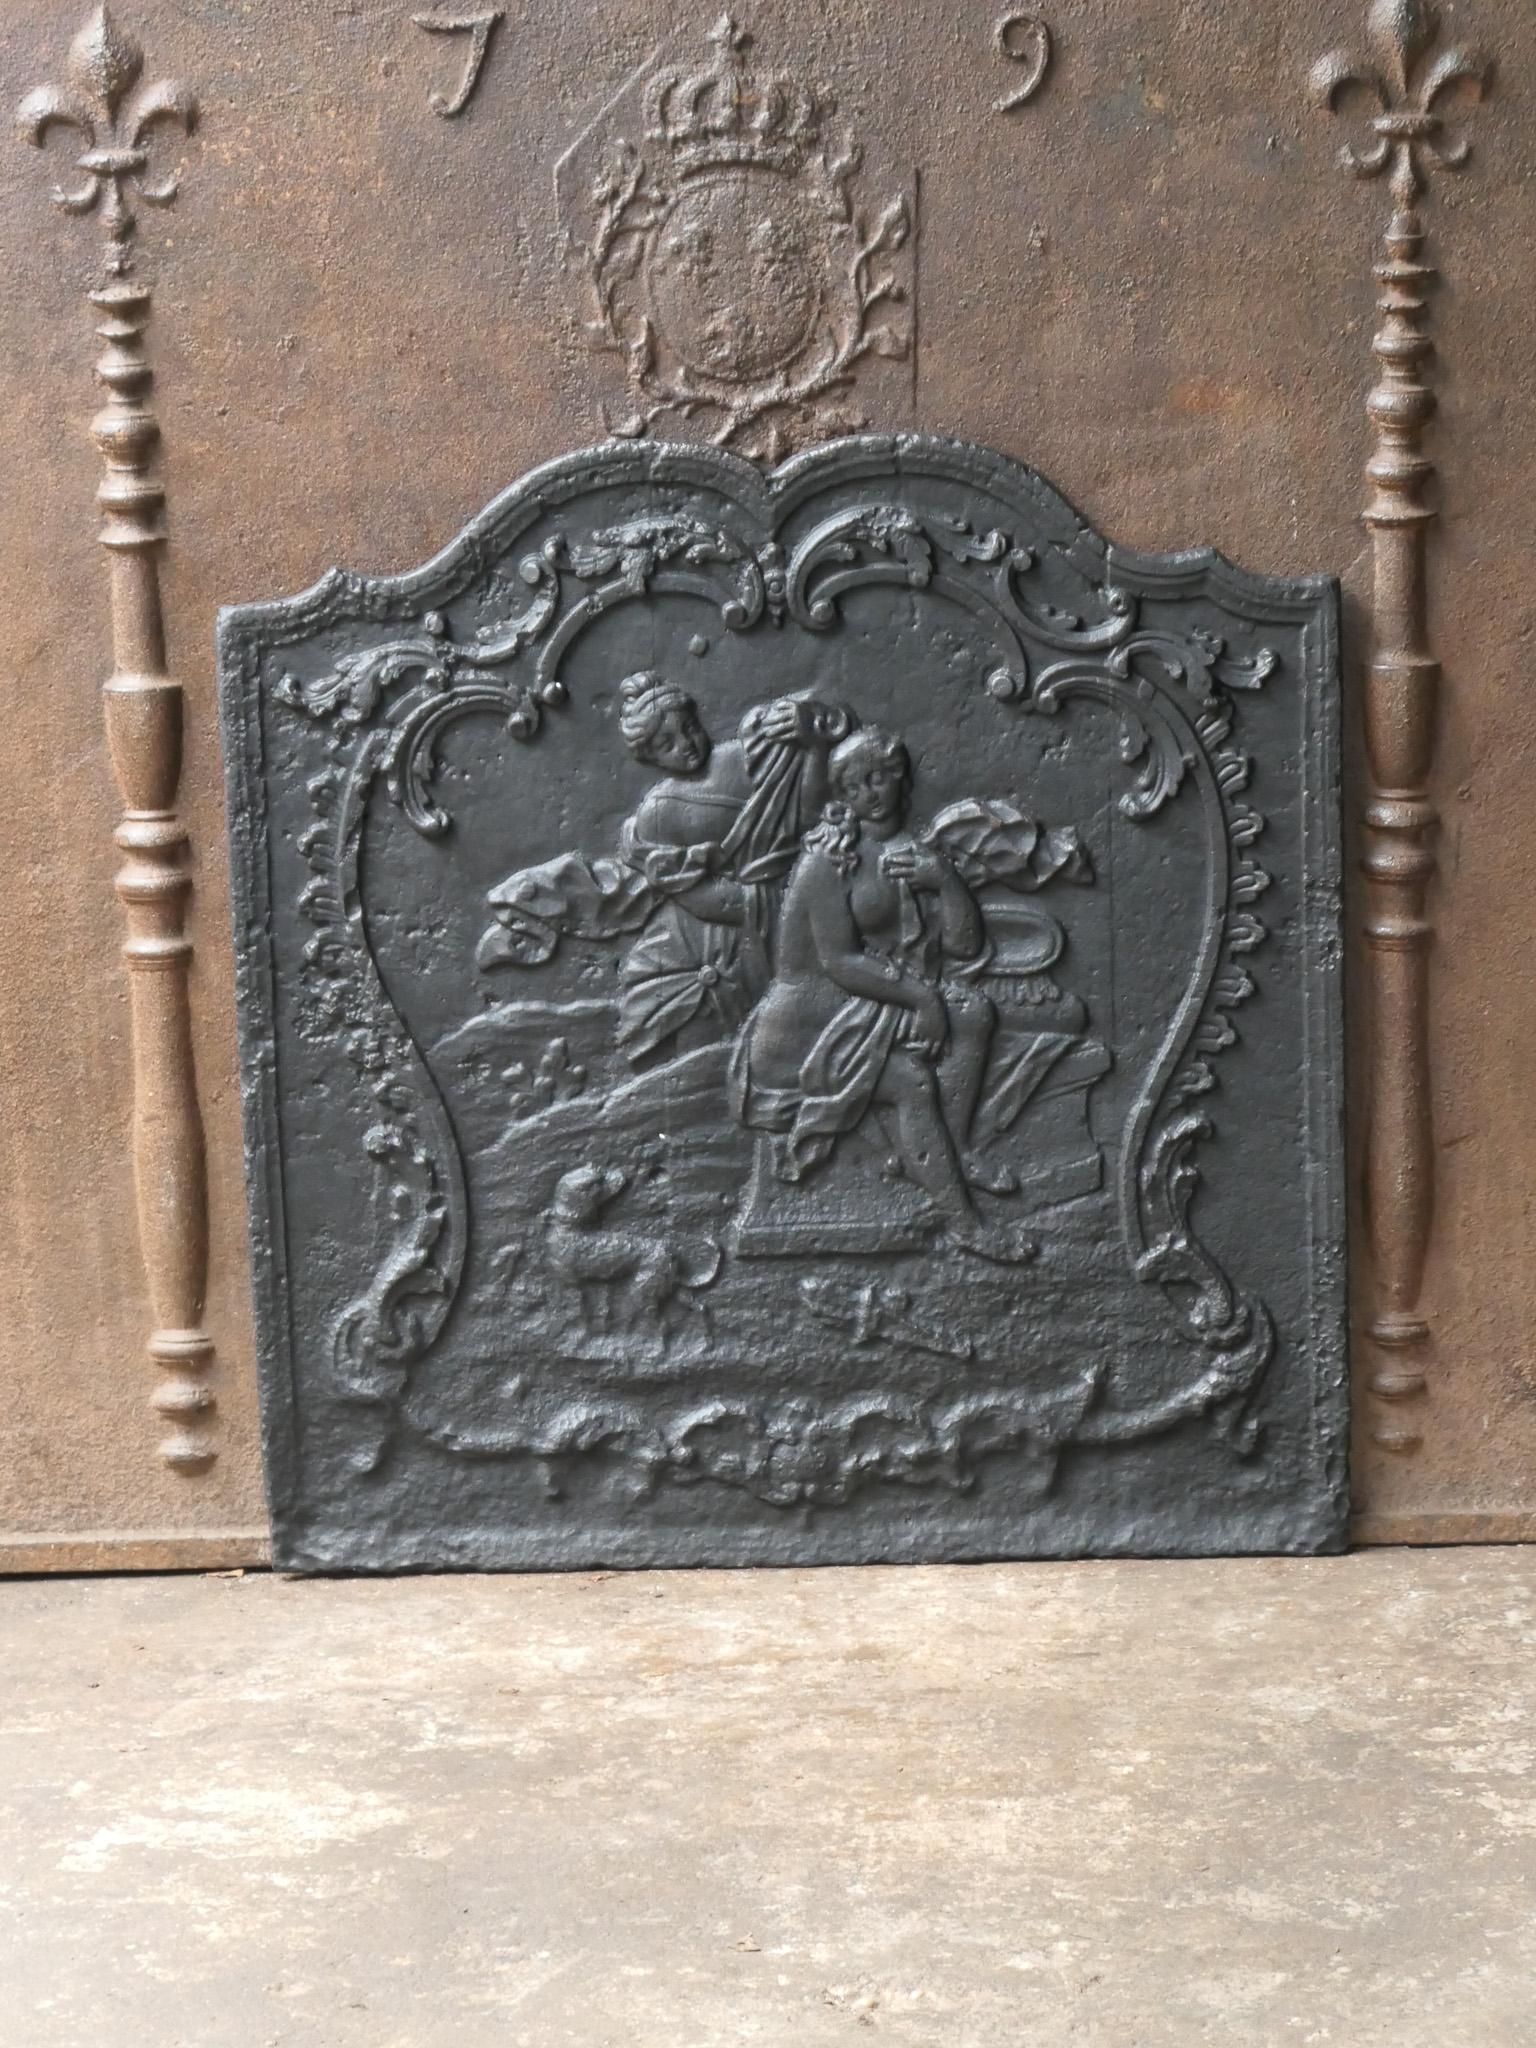 Plaque de cheminée française du XVIIIe siècle représentant la déesse Diane au bain.

Diane, déesse de la chasse, également protectrice des animaux de la forêt, en particulier des jeunes animaux. Elle éprouvait un grand plaisir à chasser, mais